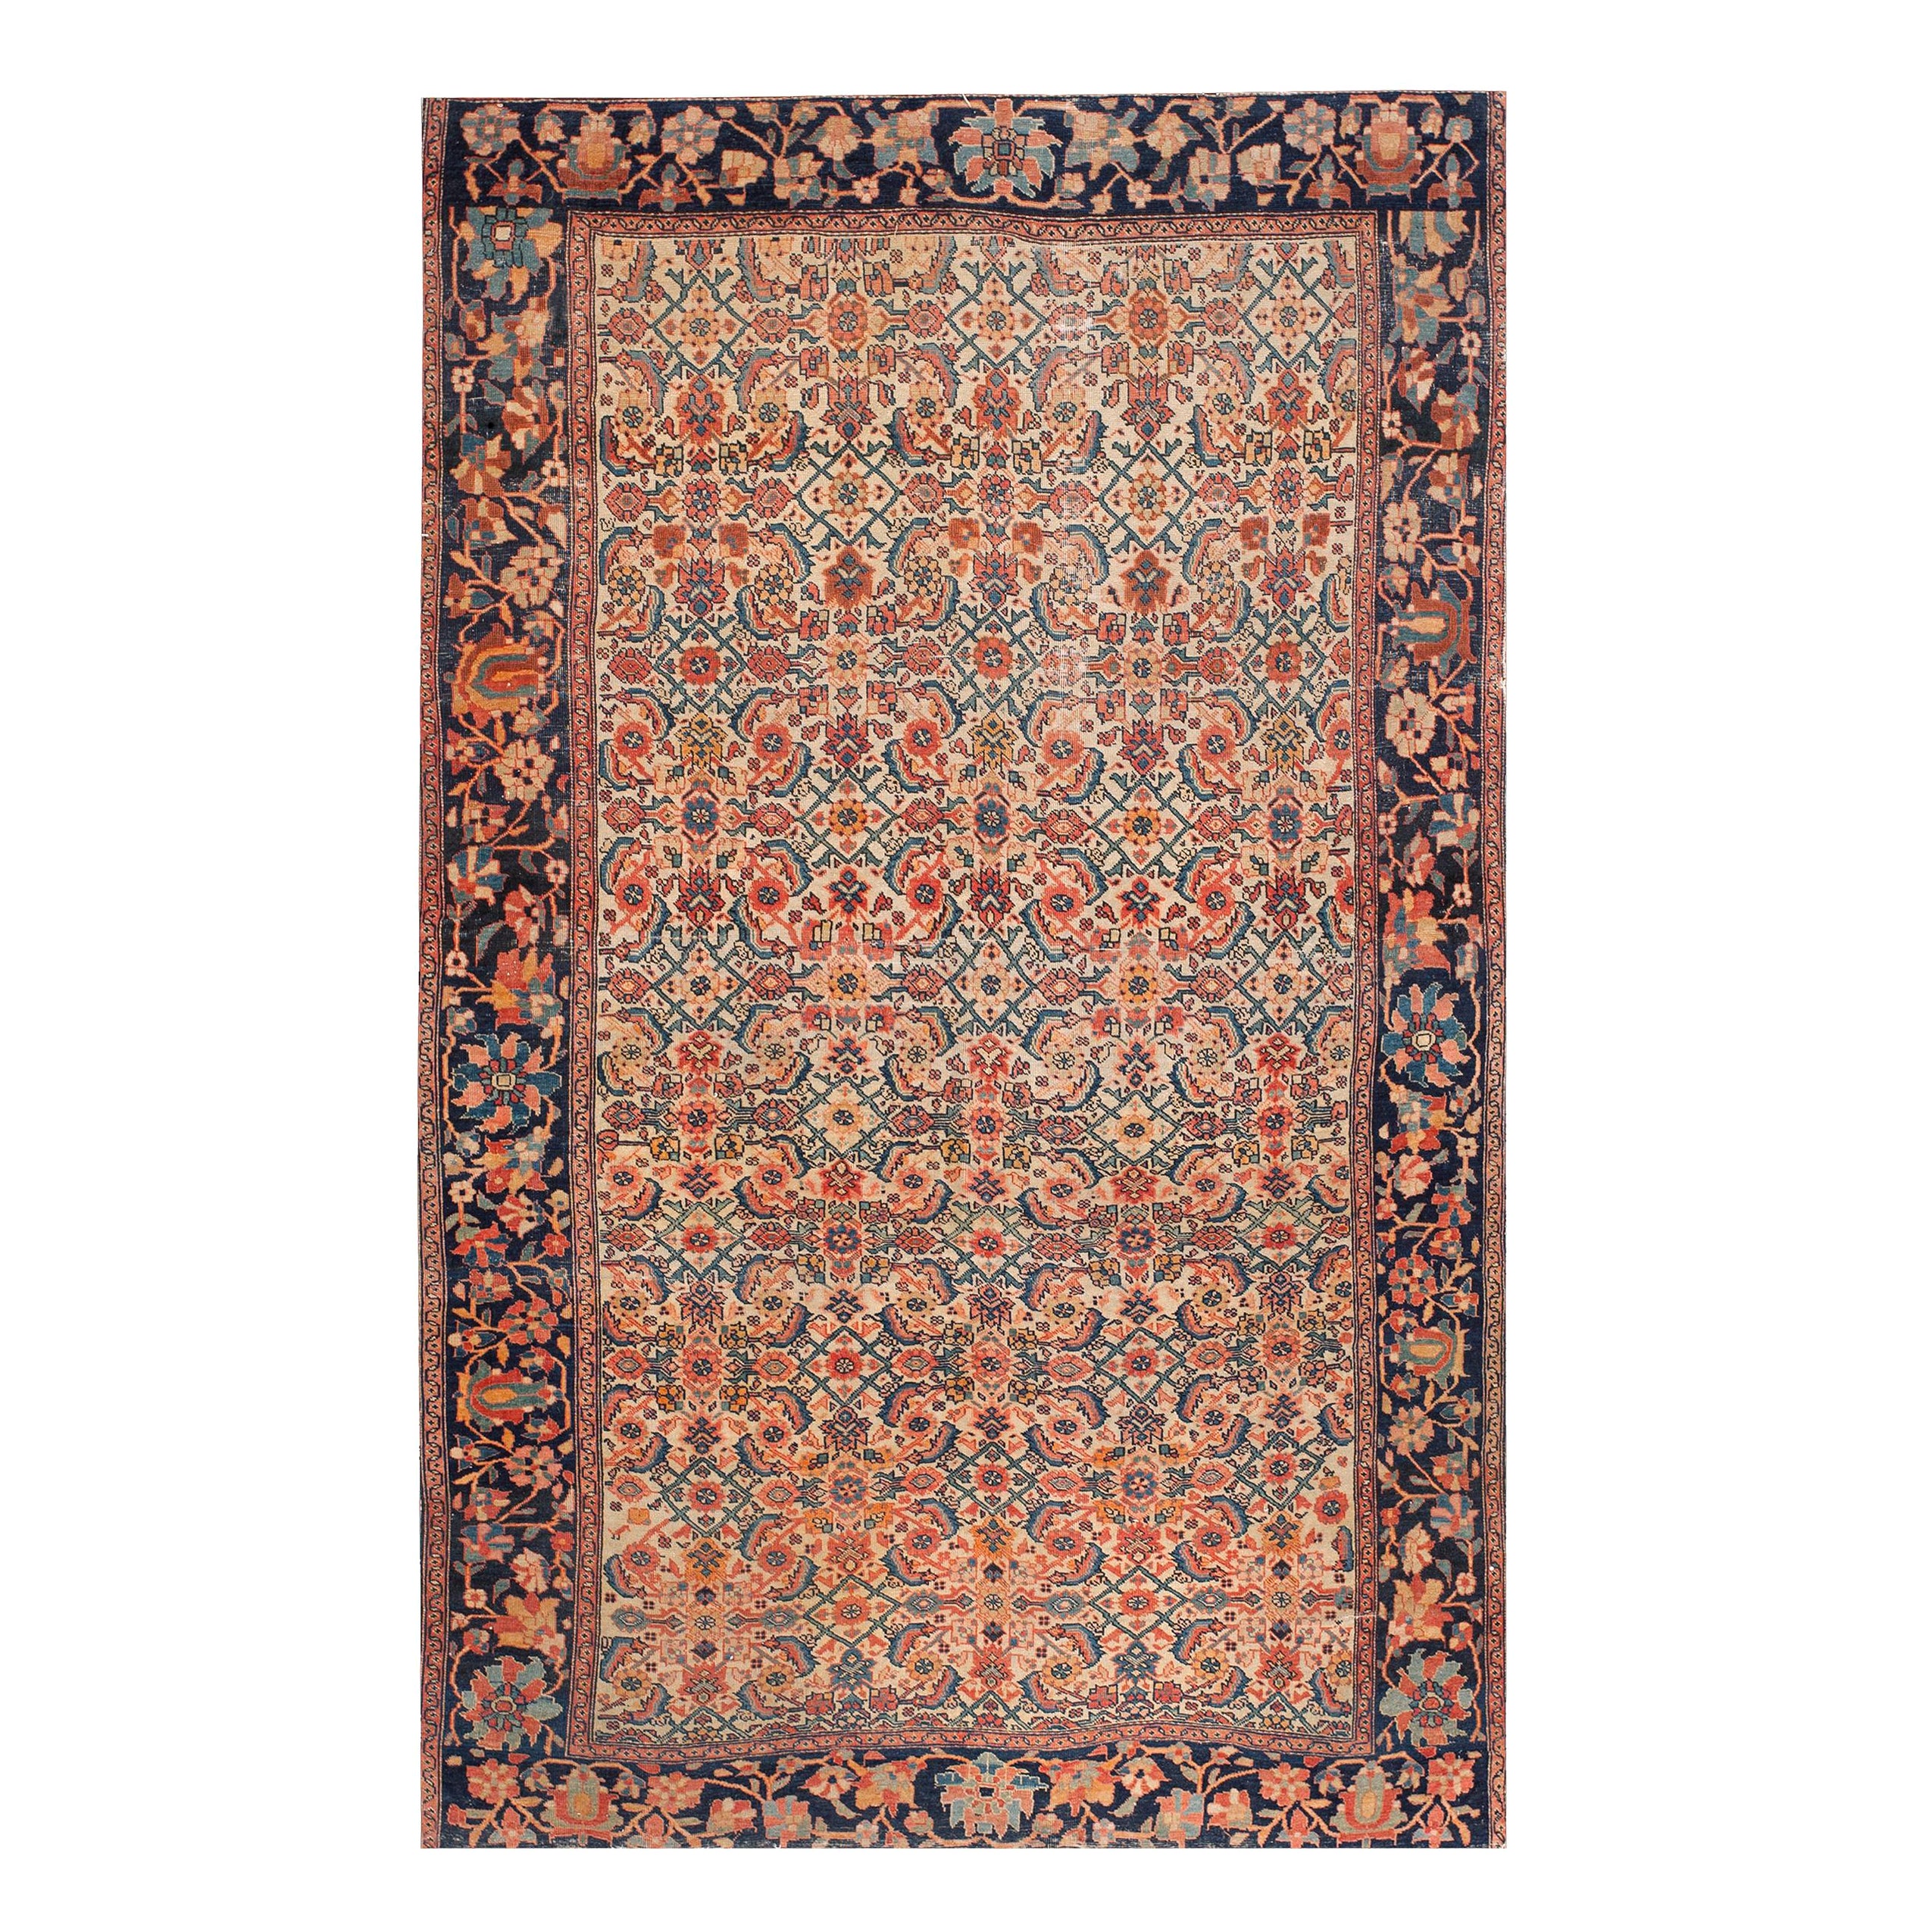 Persischer Sarouk-Franzouk-Teppich aus dem späten 19. Jahrhundert